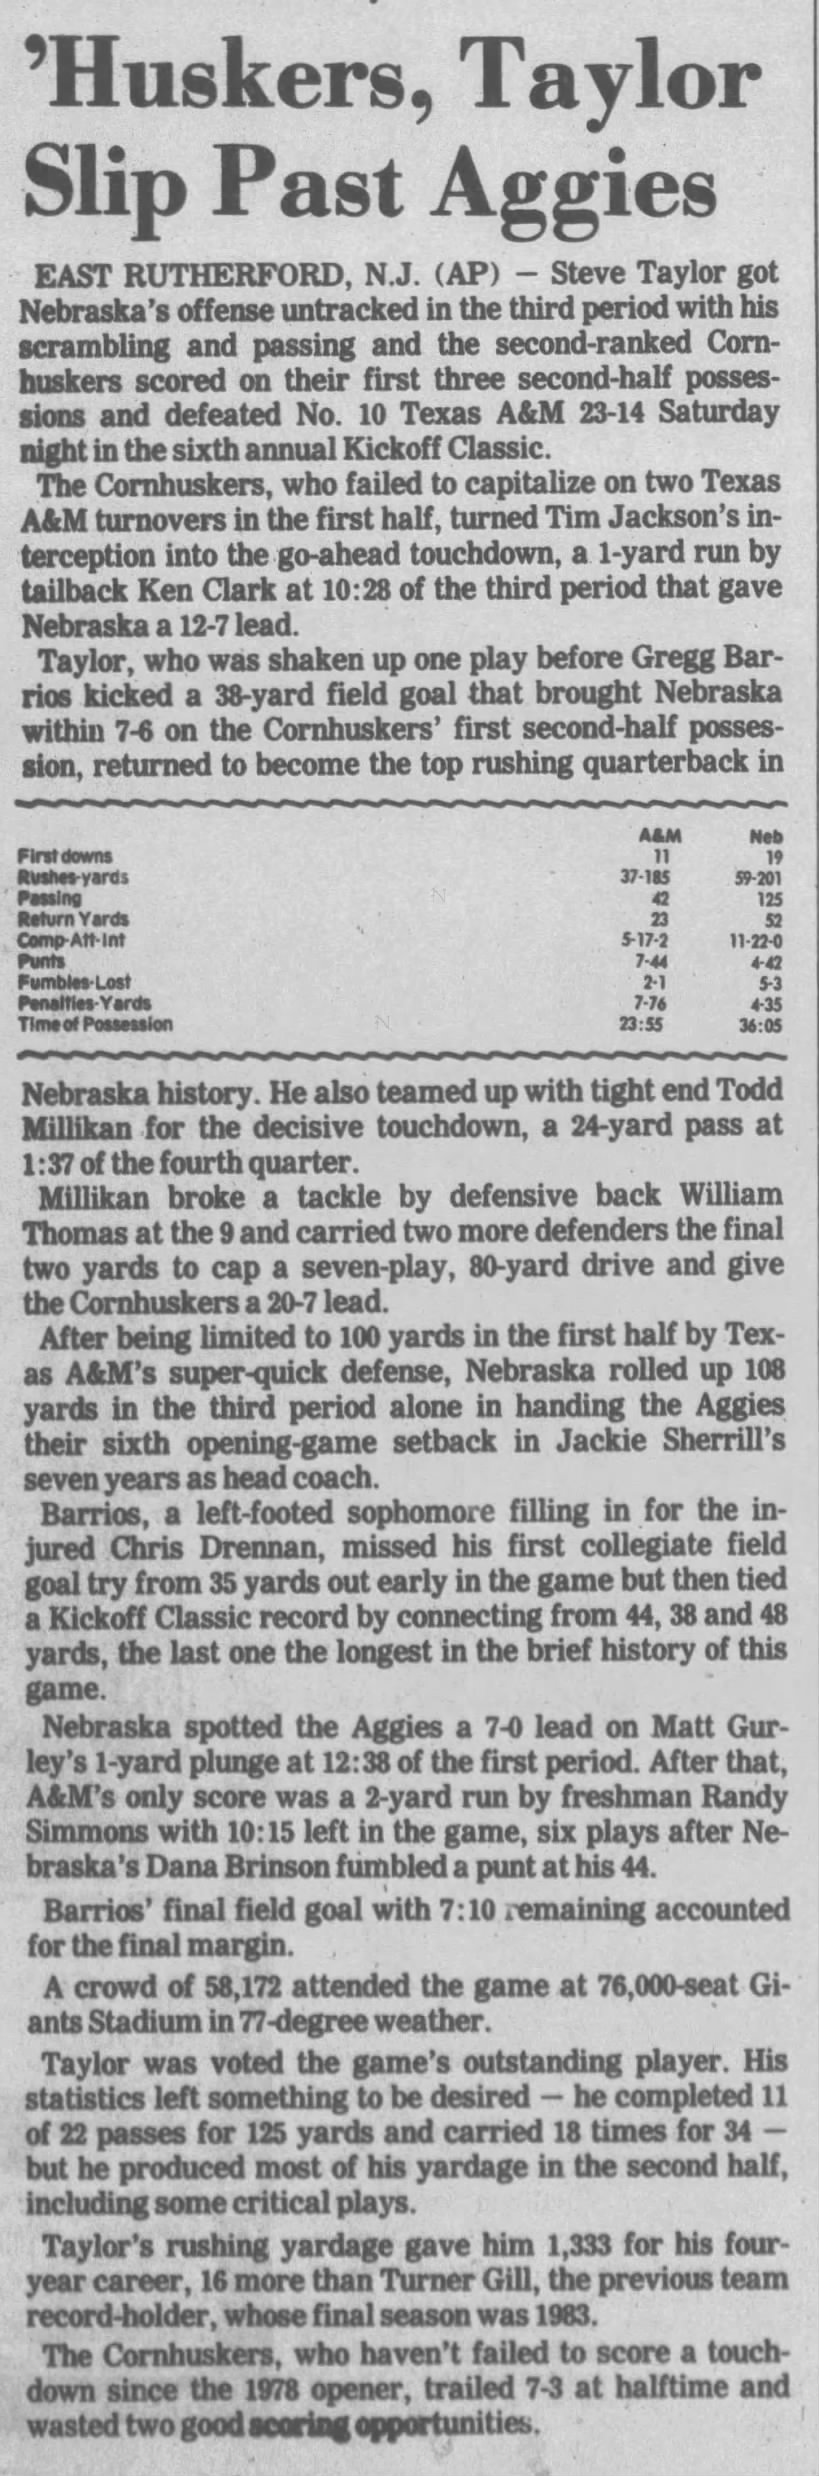 1988 Nebraska-Texas A&M AP